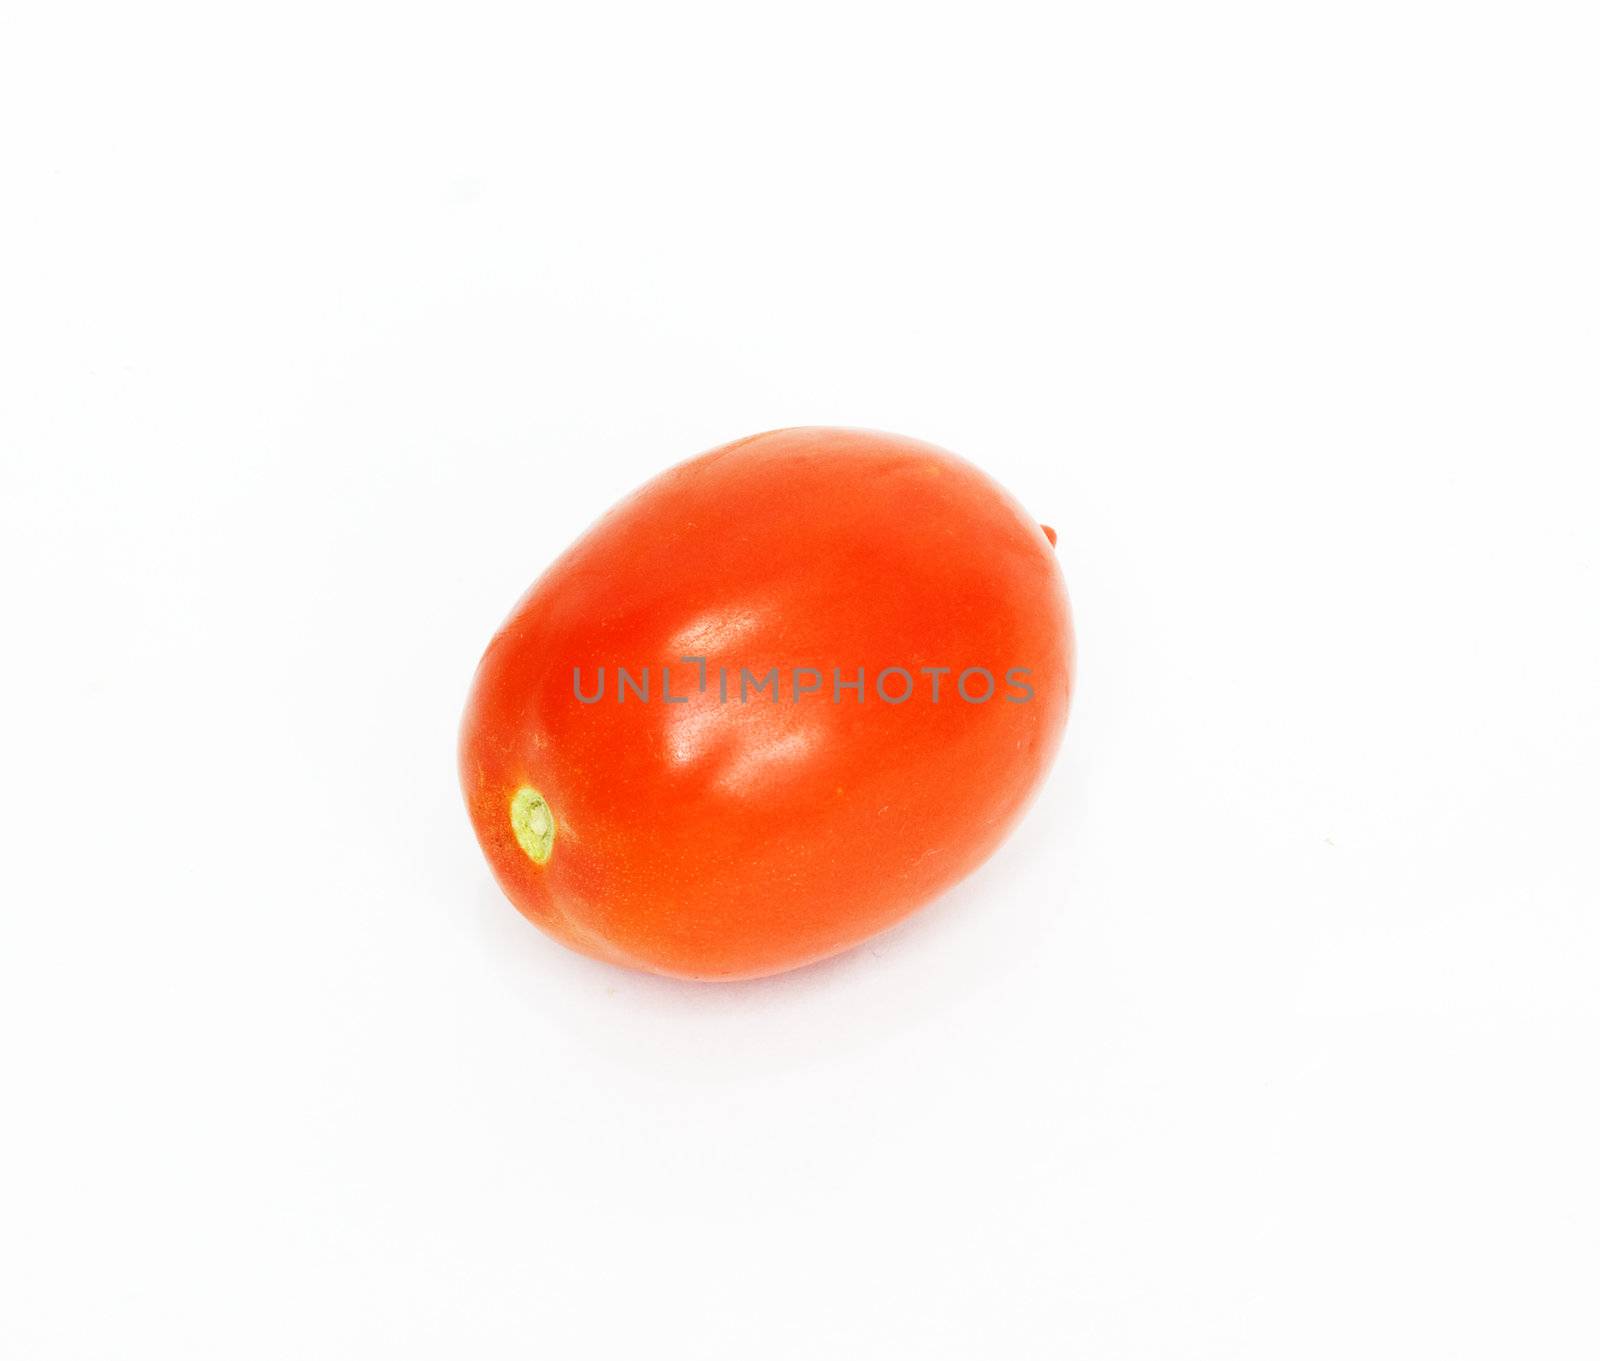 one tomato 